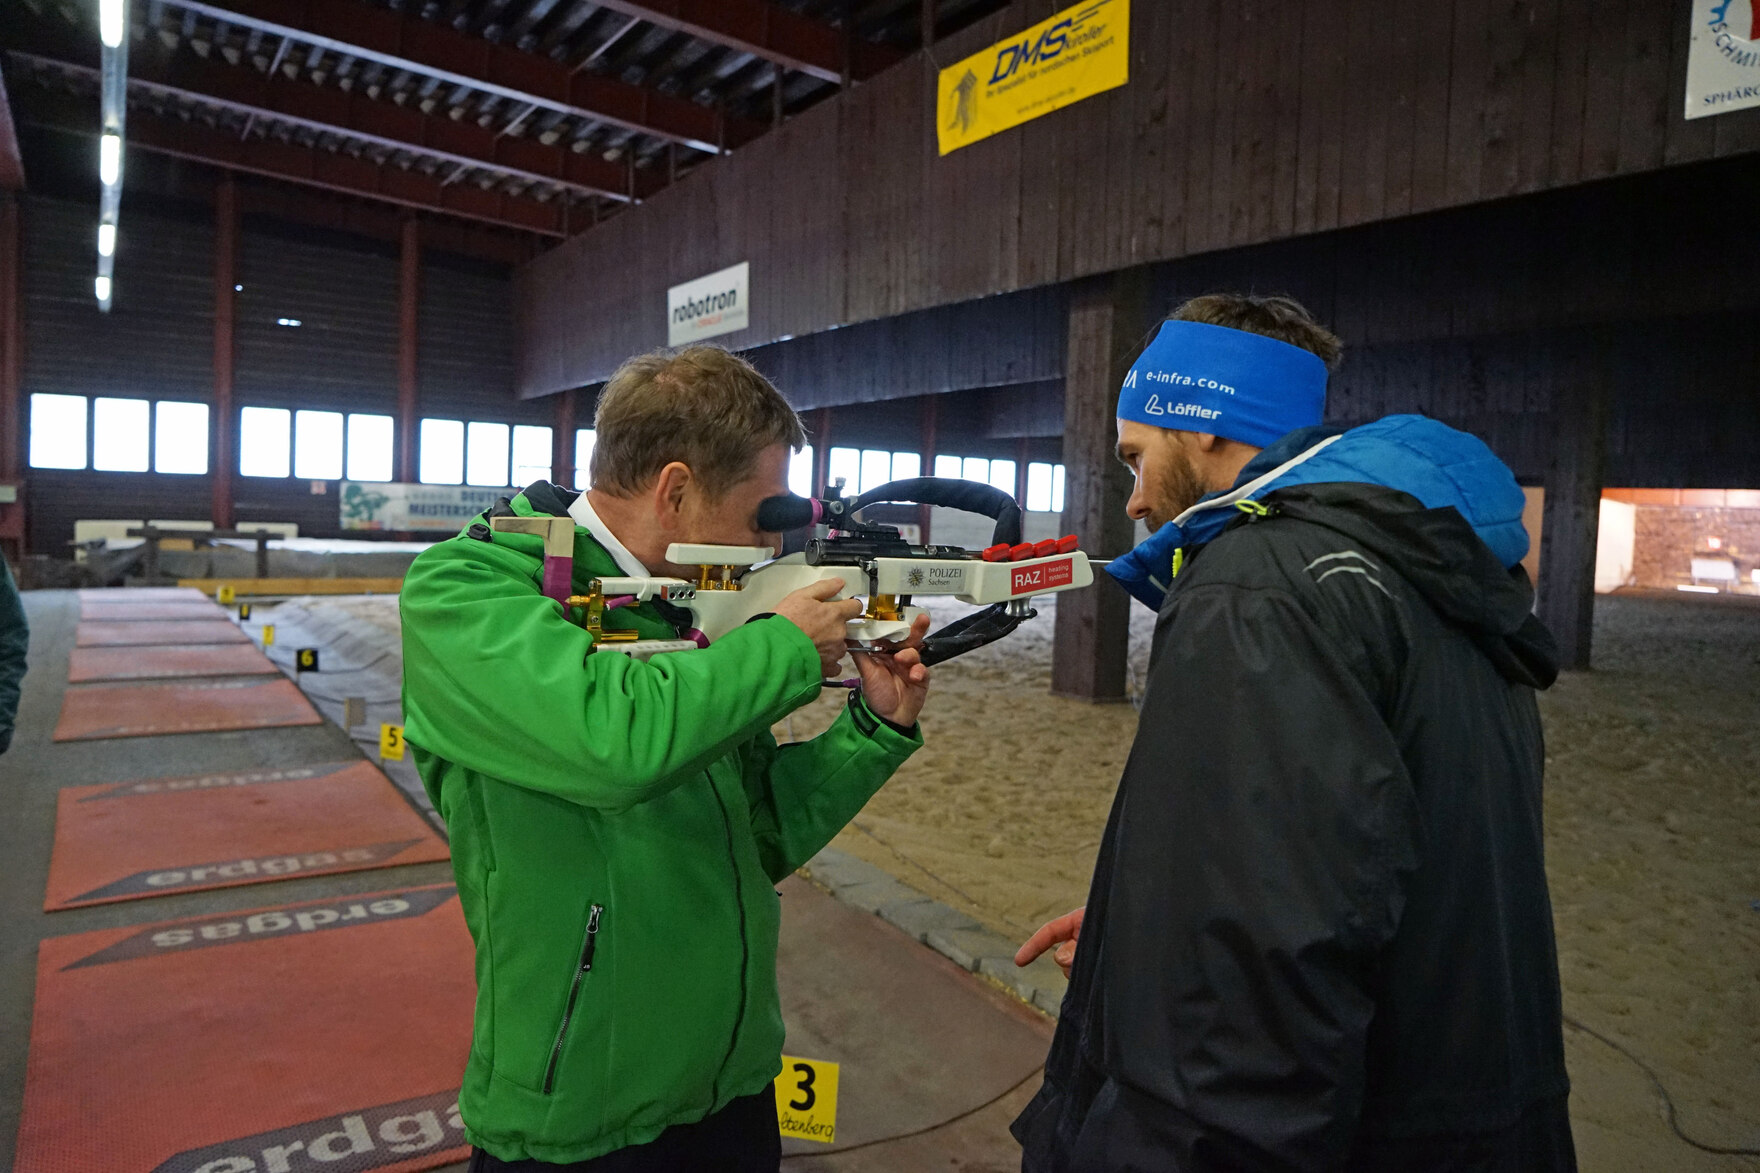 Ein Mann hält ein Biathlongewehr in den Händen während ihm ein anderer Mann anweist.